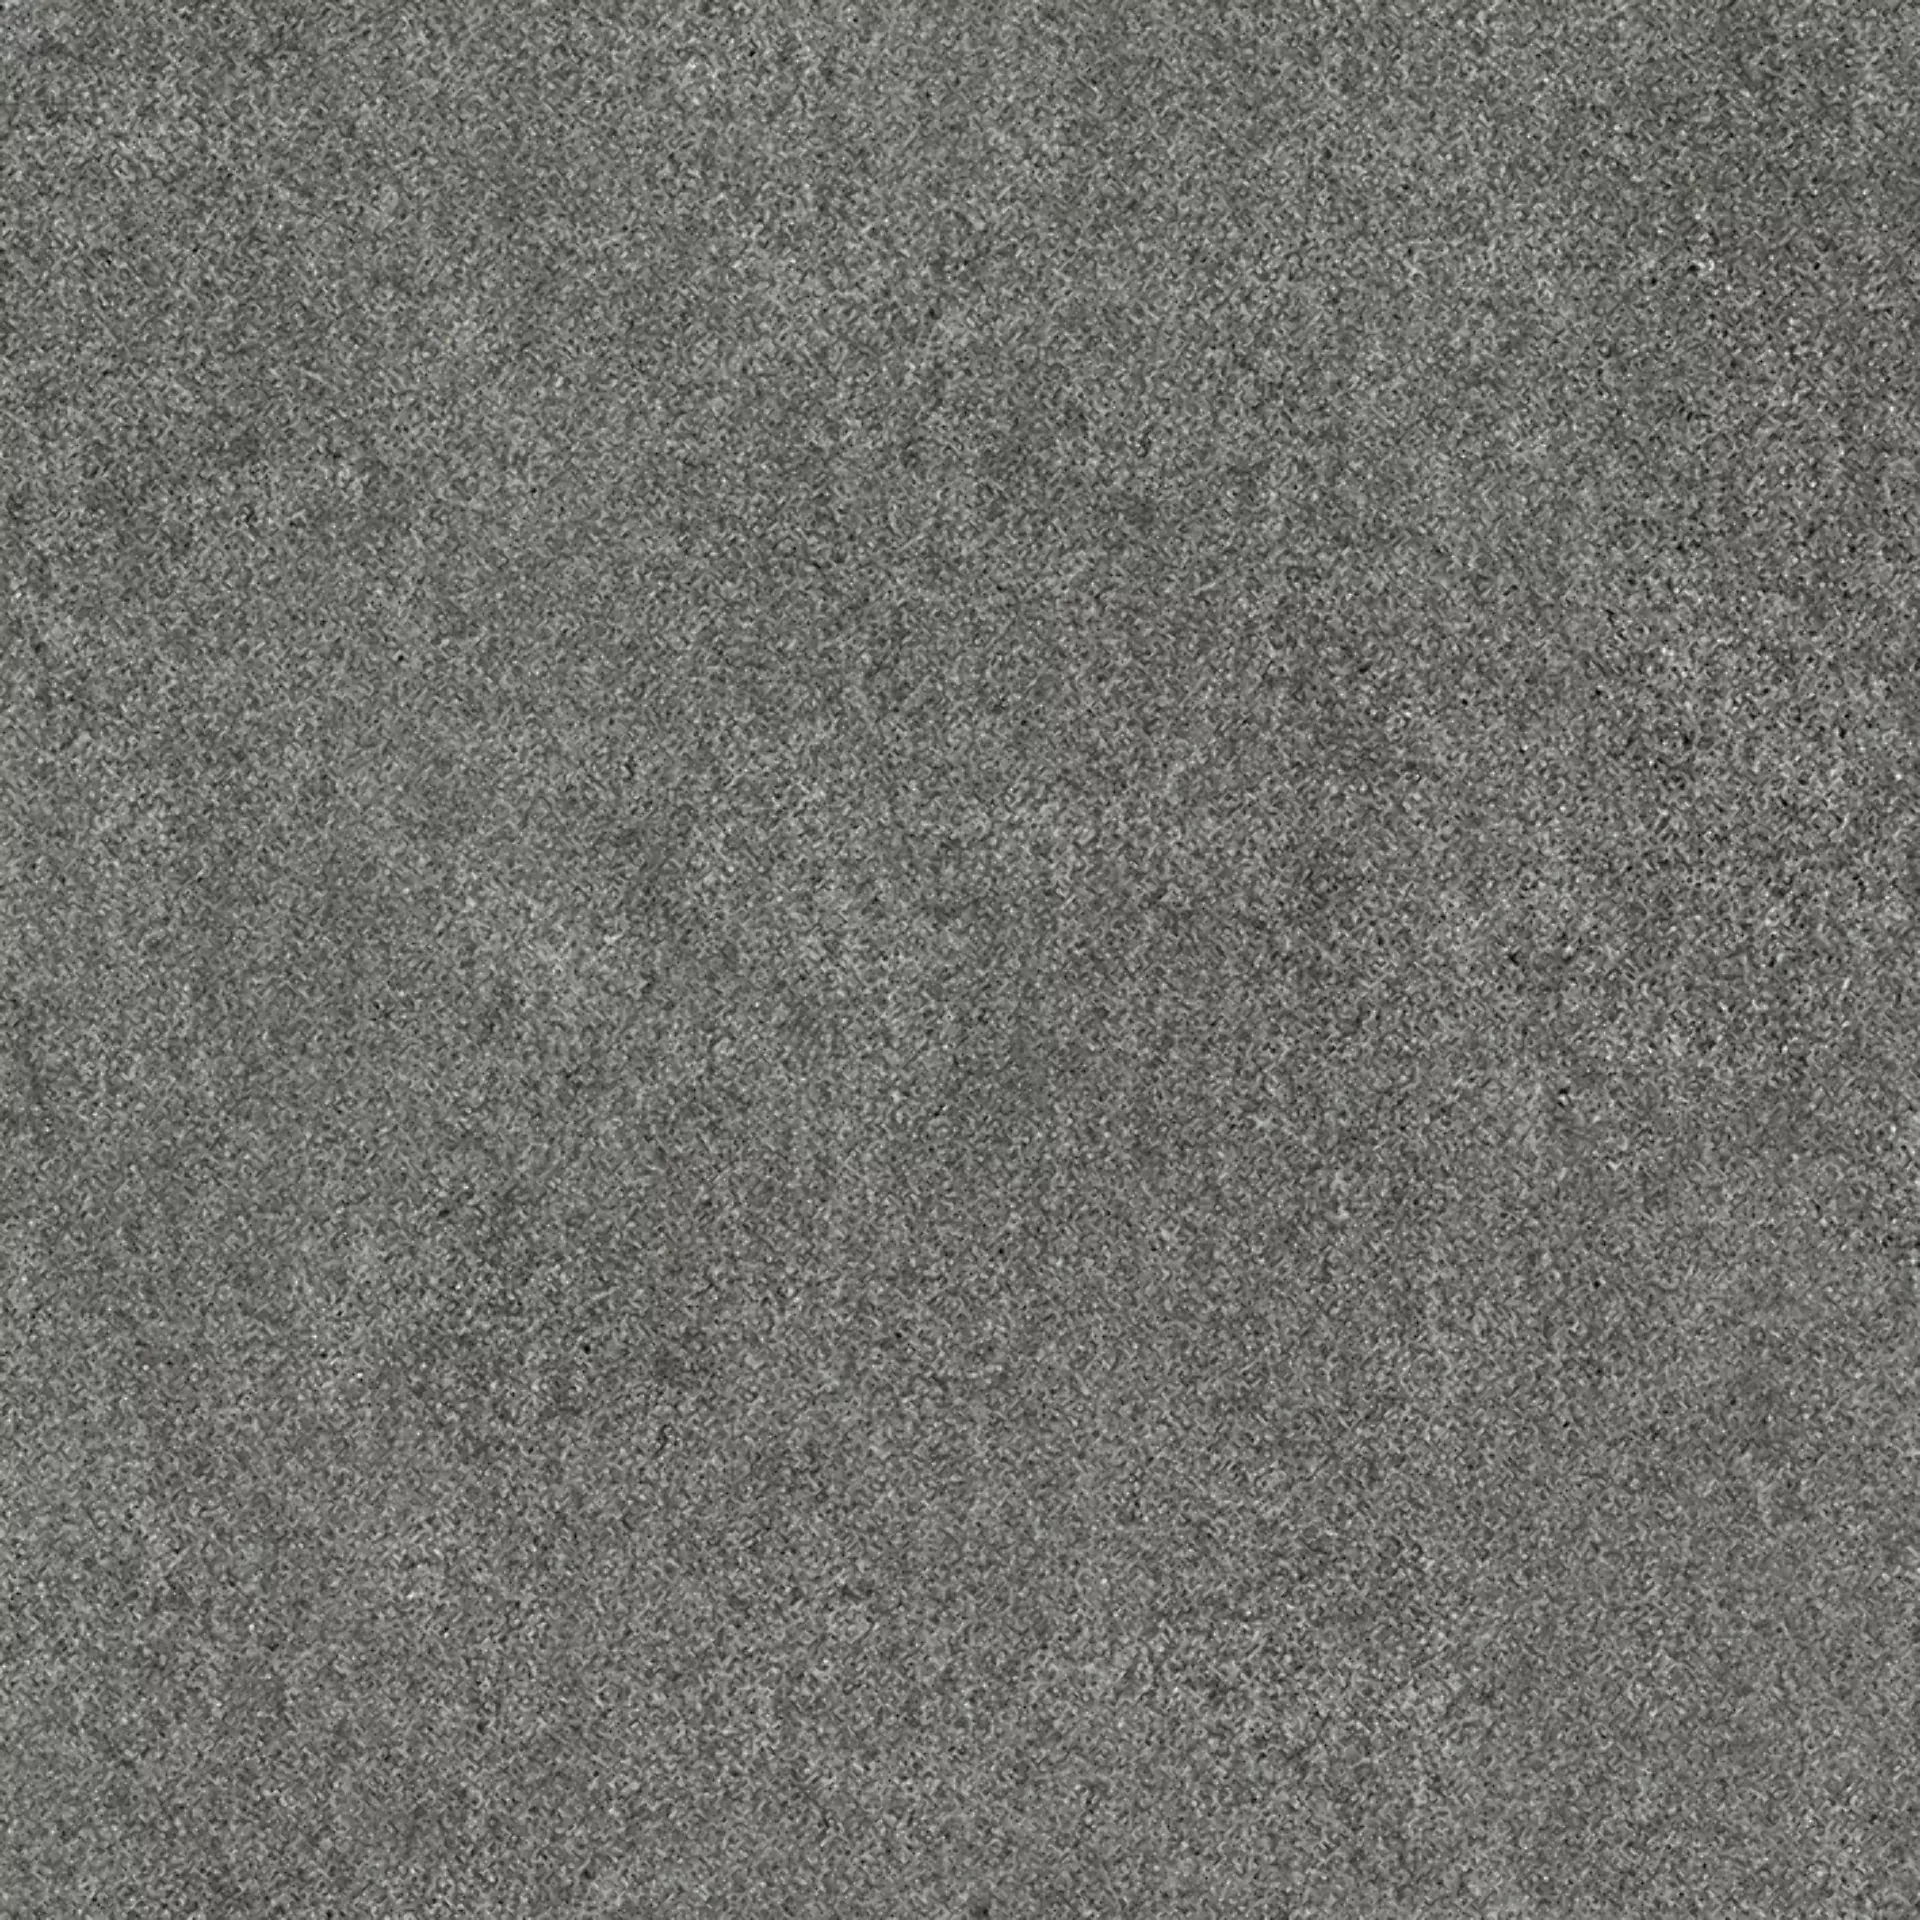 Wandfliese,Bodenfliese Villeroy & Boch Solid Tones Dark Stone Matt Dark Stone 2310-PS62 matt 60x60cm rektifiziert 10mm